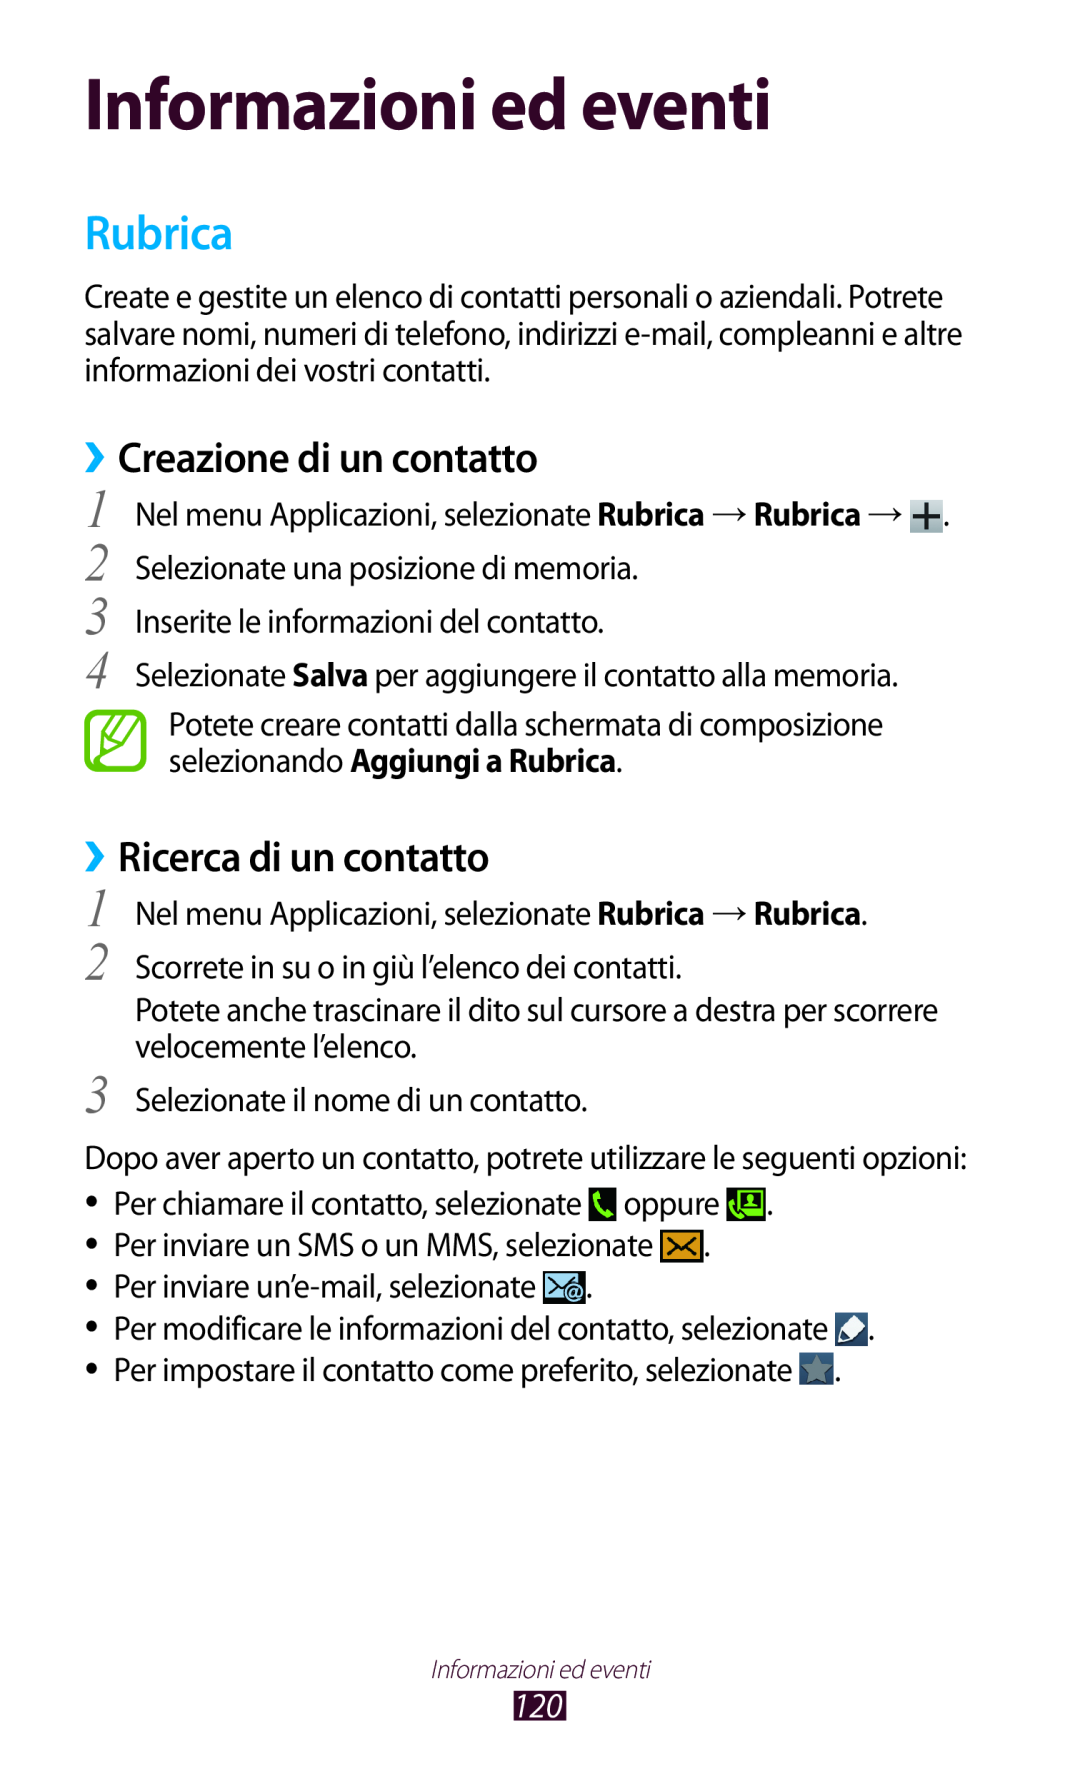 Samsung GT-N7000ZBEITV manual Informazioni ed eventi, Rubrica, ››Creazione di un contatto, ››Ricerca di un contatto 